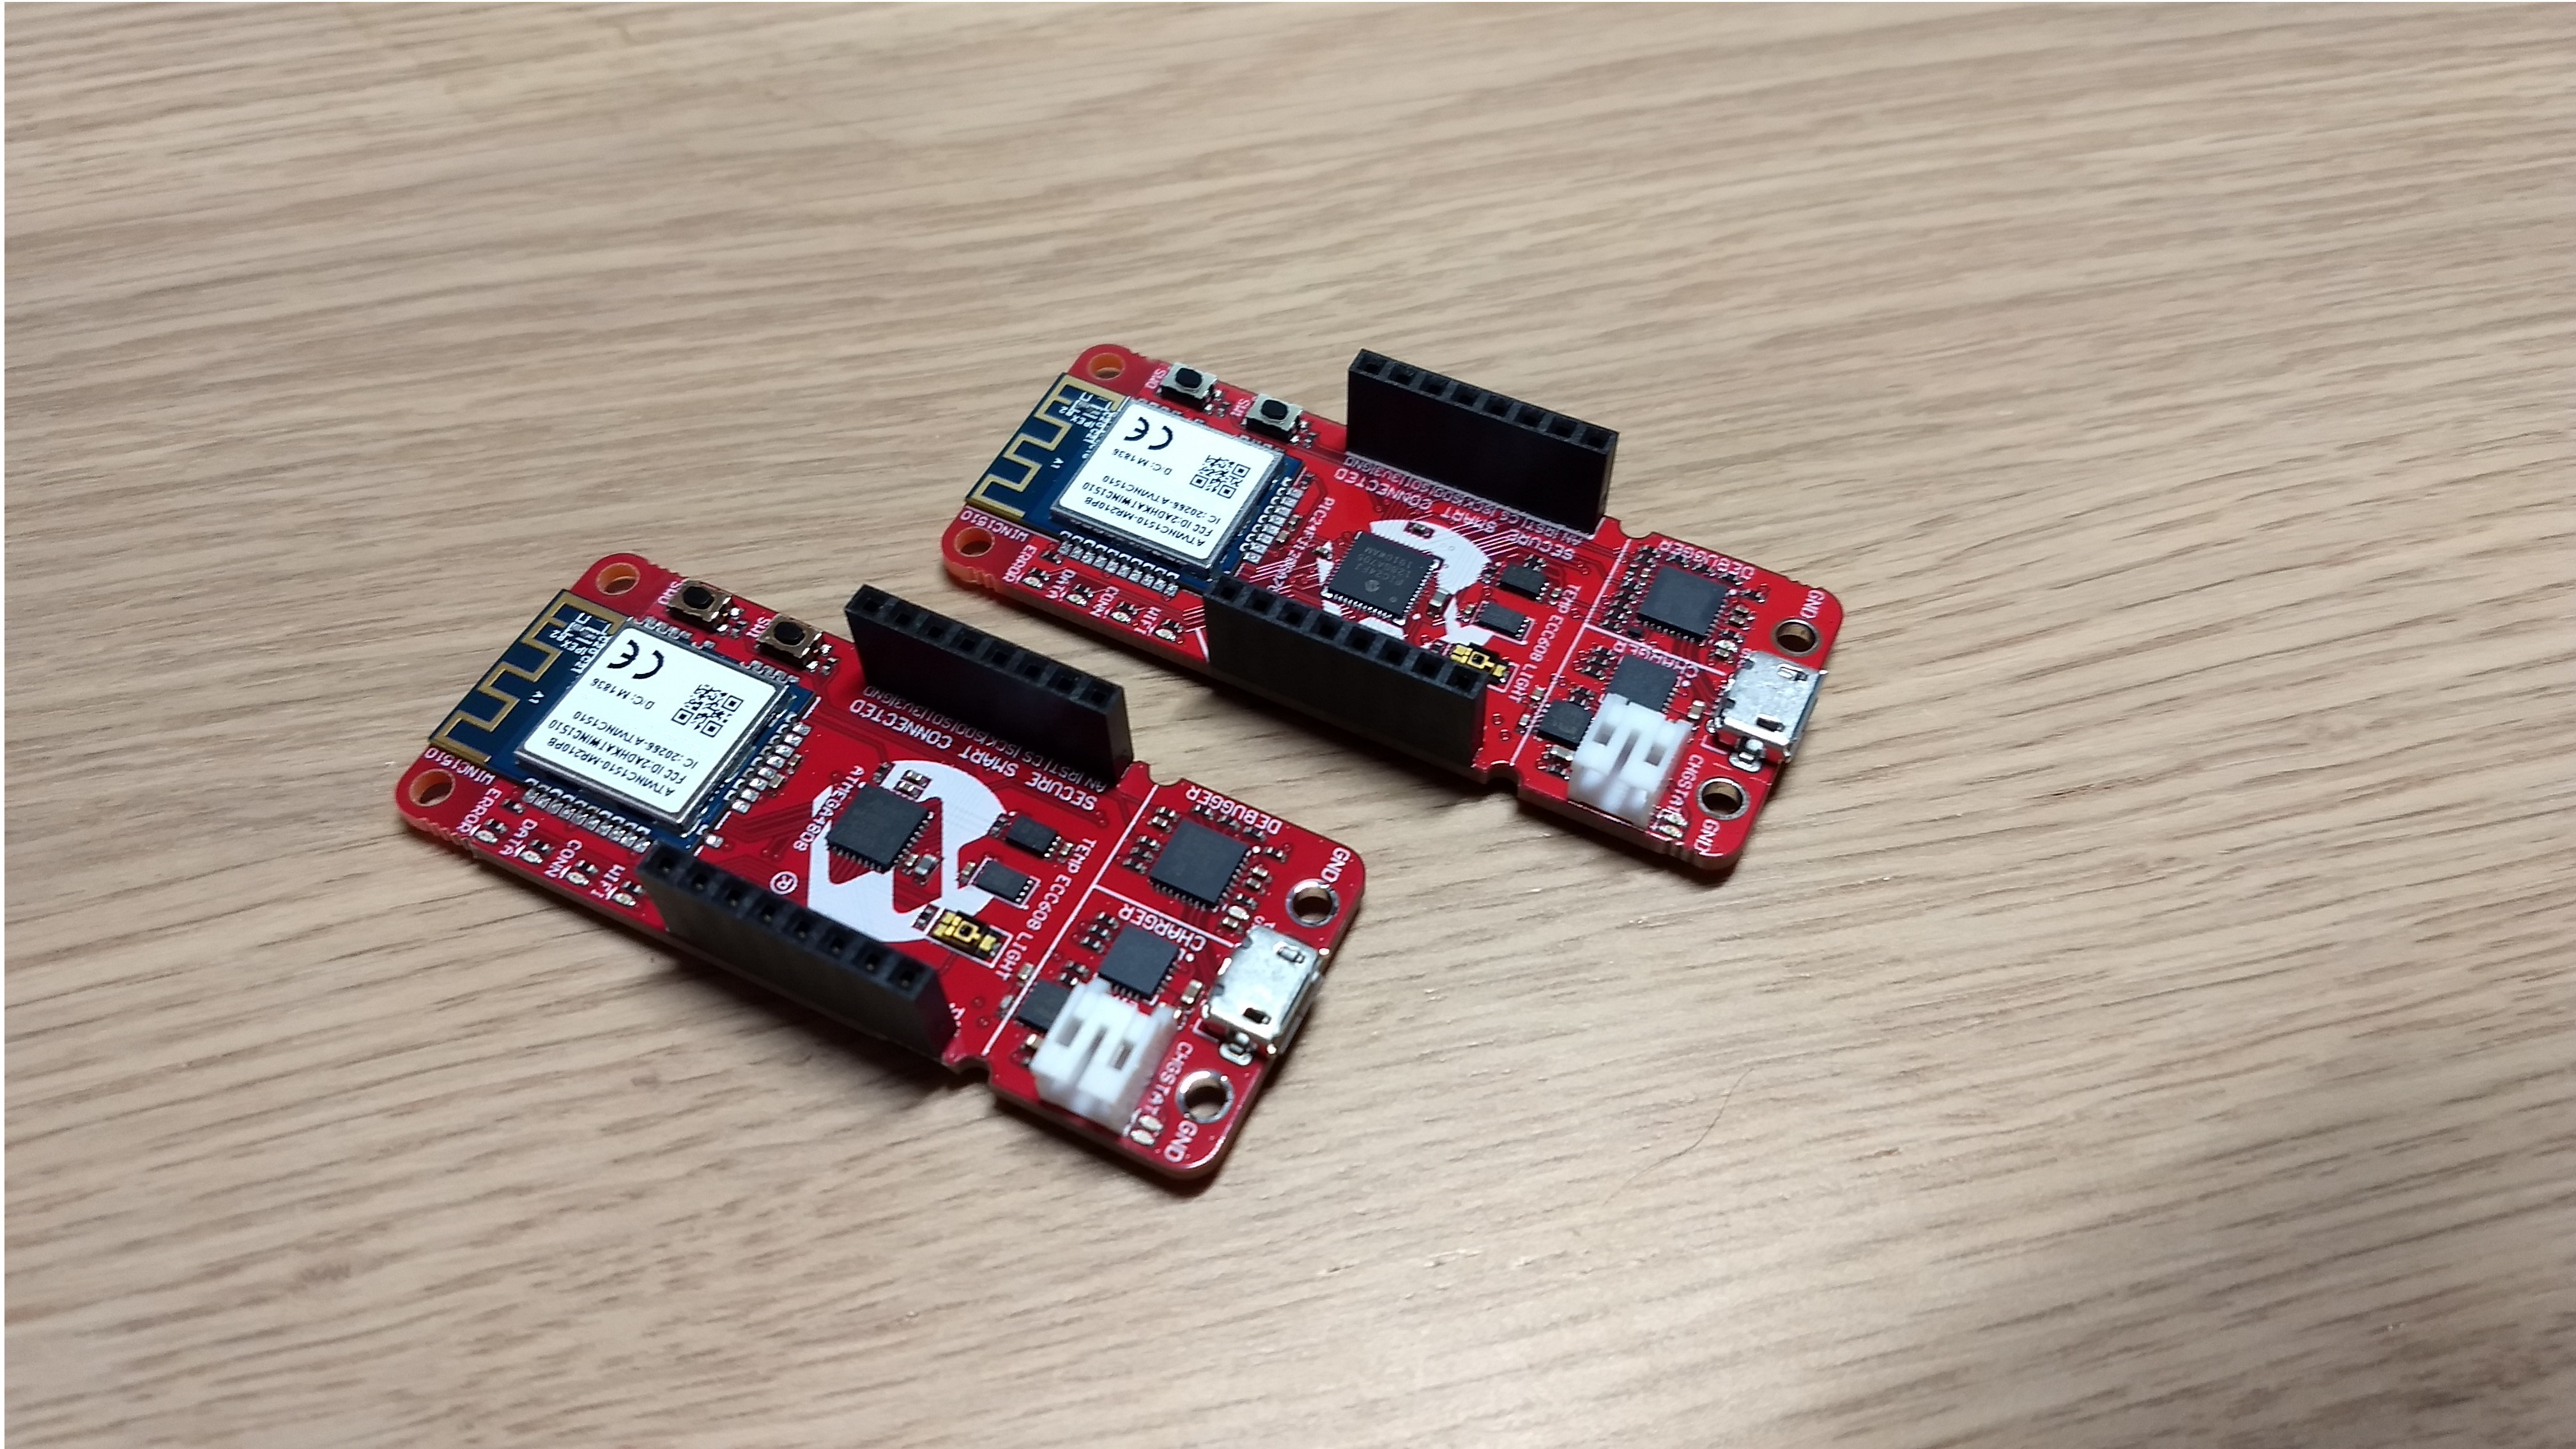 AVR-IoT und PIC-IoT – Entwicklungsboards von Microchip